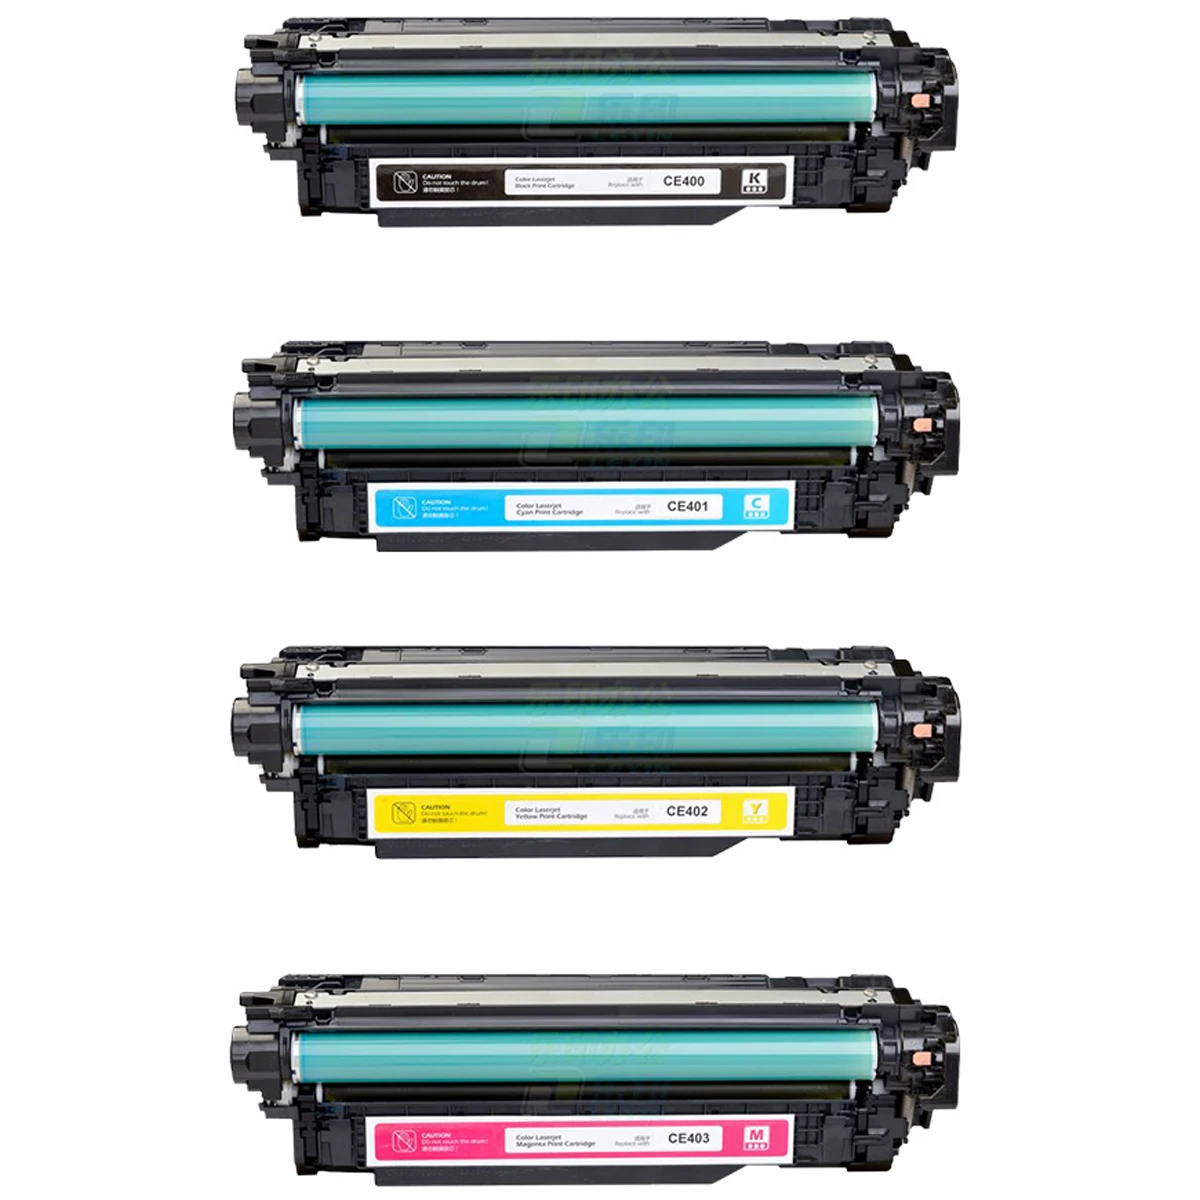 

Toner Cartridge for HP Color LaserJet Enterprise 500 500 M551 500 M551DN 500 M551N 500 M551XH M551DN M551DN M551 507A/CE400A 400